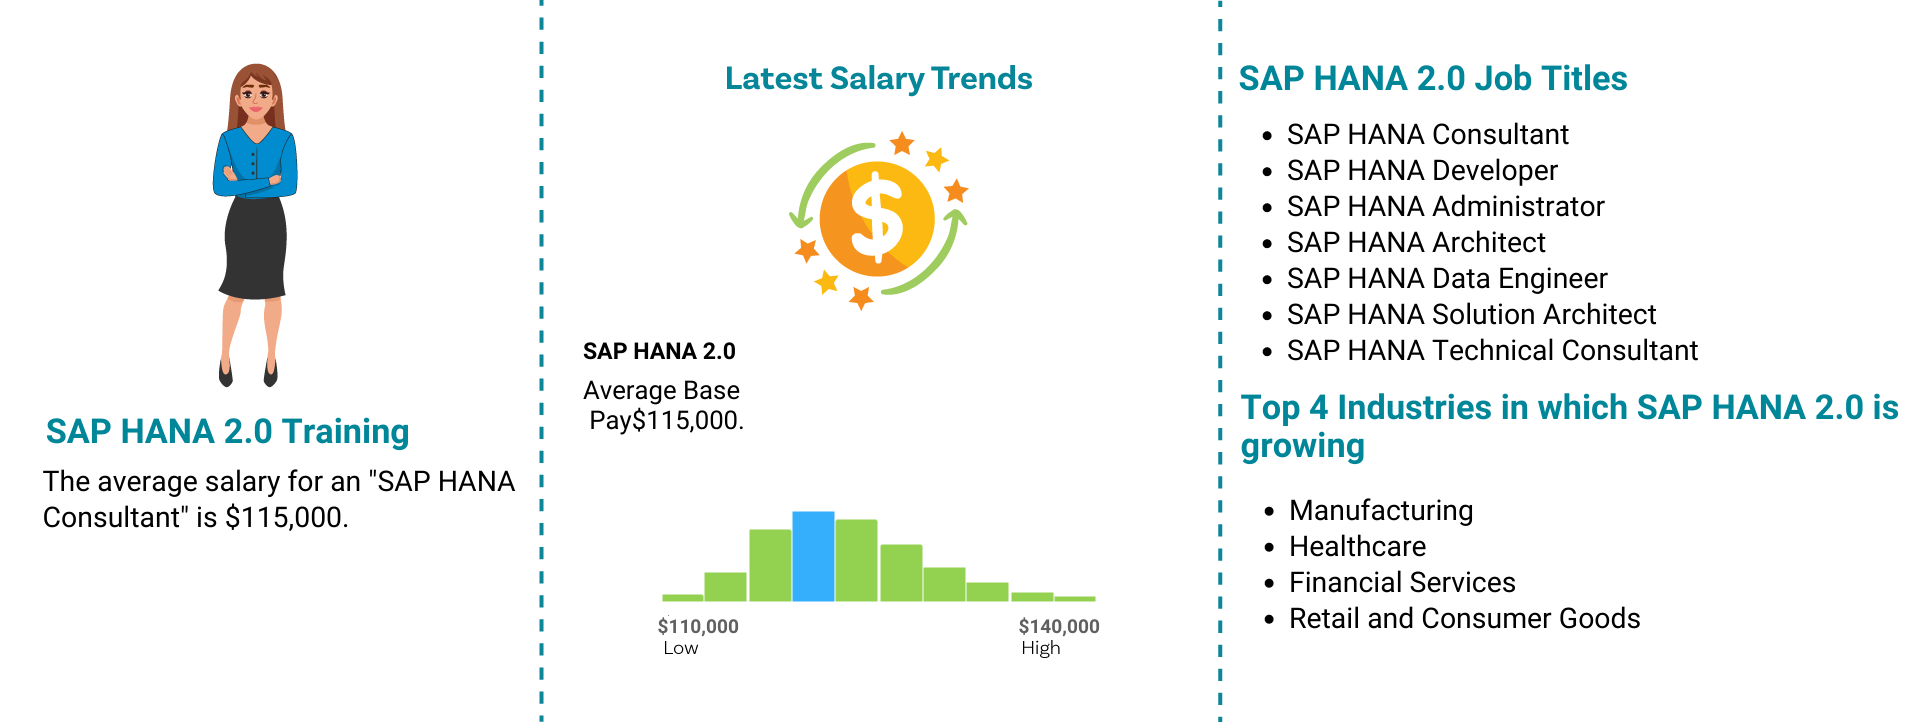 SAP HANA 2.0 Job Outlook